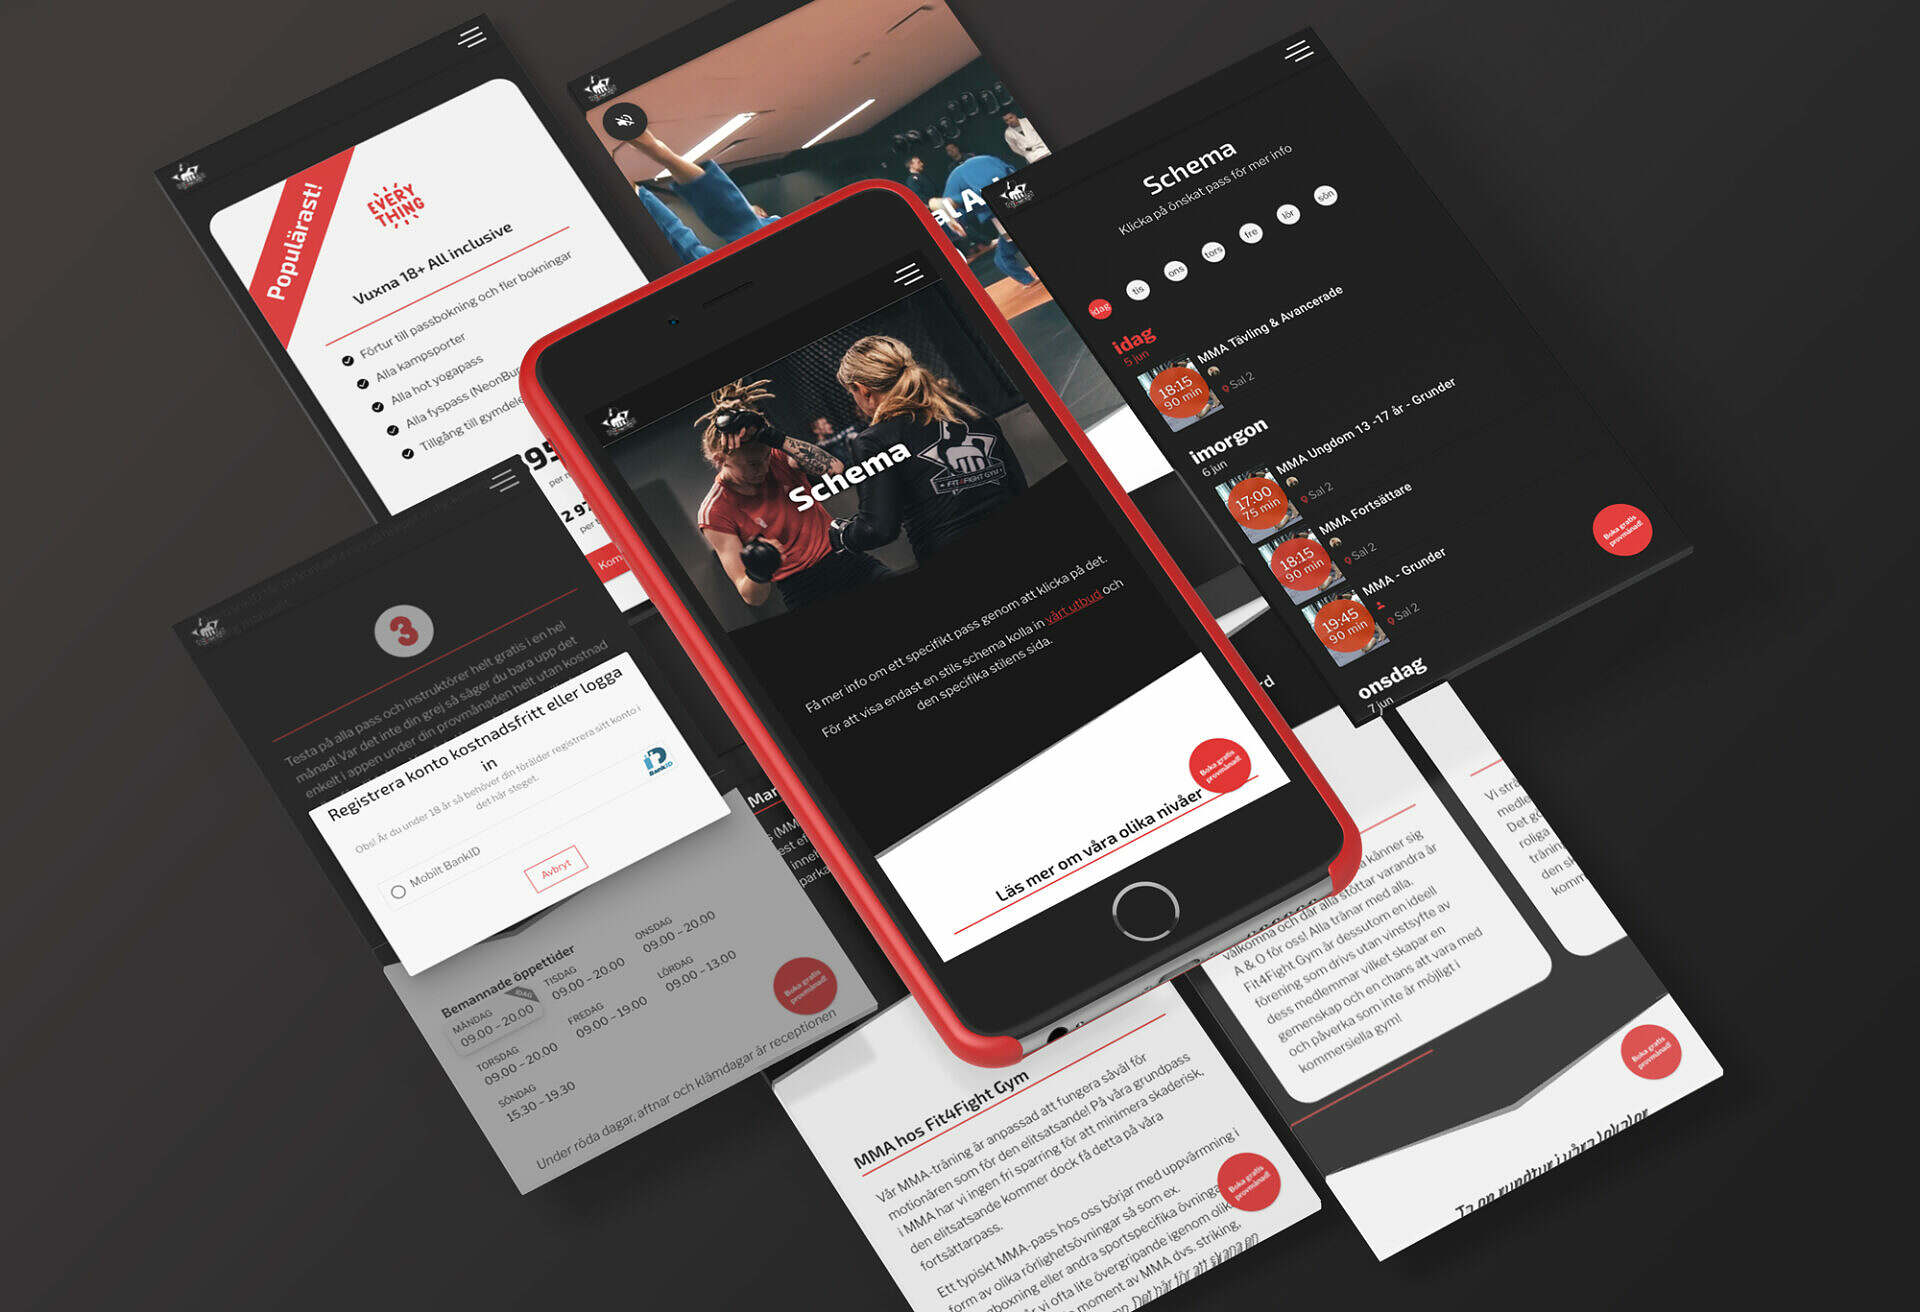 Flera mobilskärmar visar olika vyer från Fit4fights Zoezi-hemsida, som startsida, registreringskomponent och träningsschema. Hemsidans design är svartvit med röda accenter.